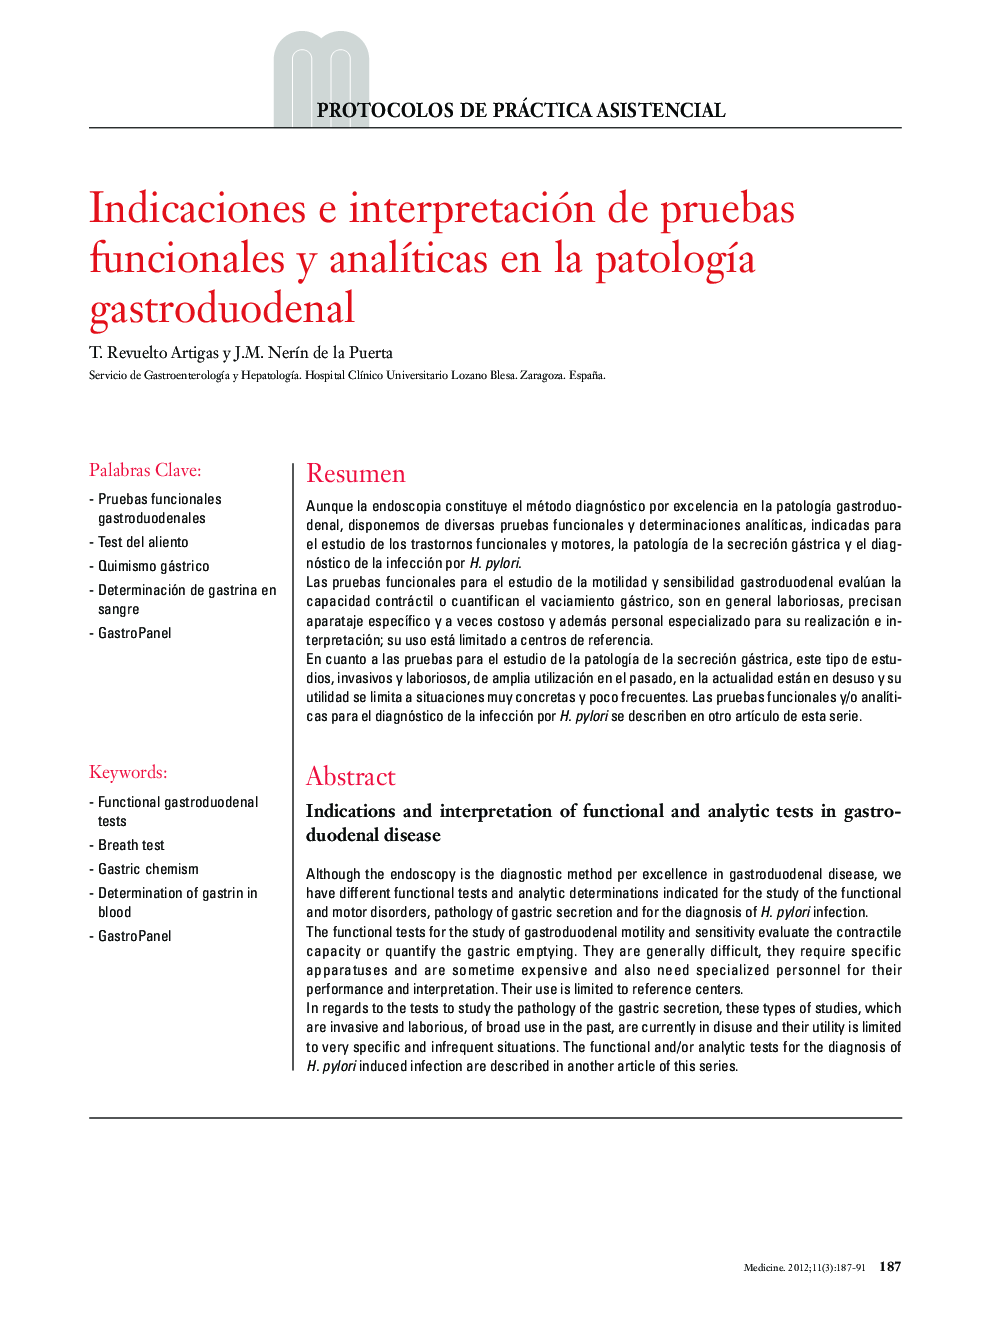 Indicaciones e interpretación de pruebas funcionales y analíticas en la patología gastroduodenal